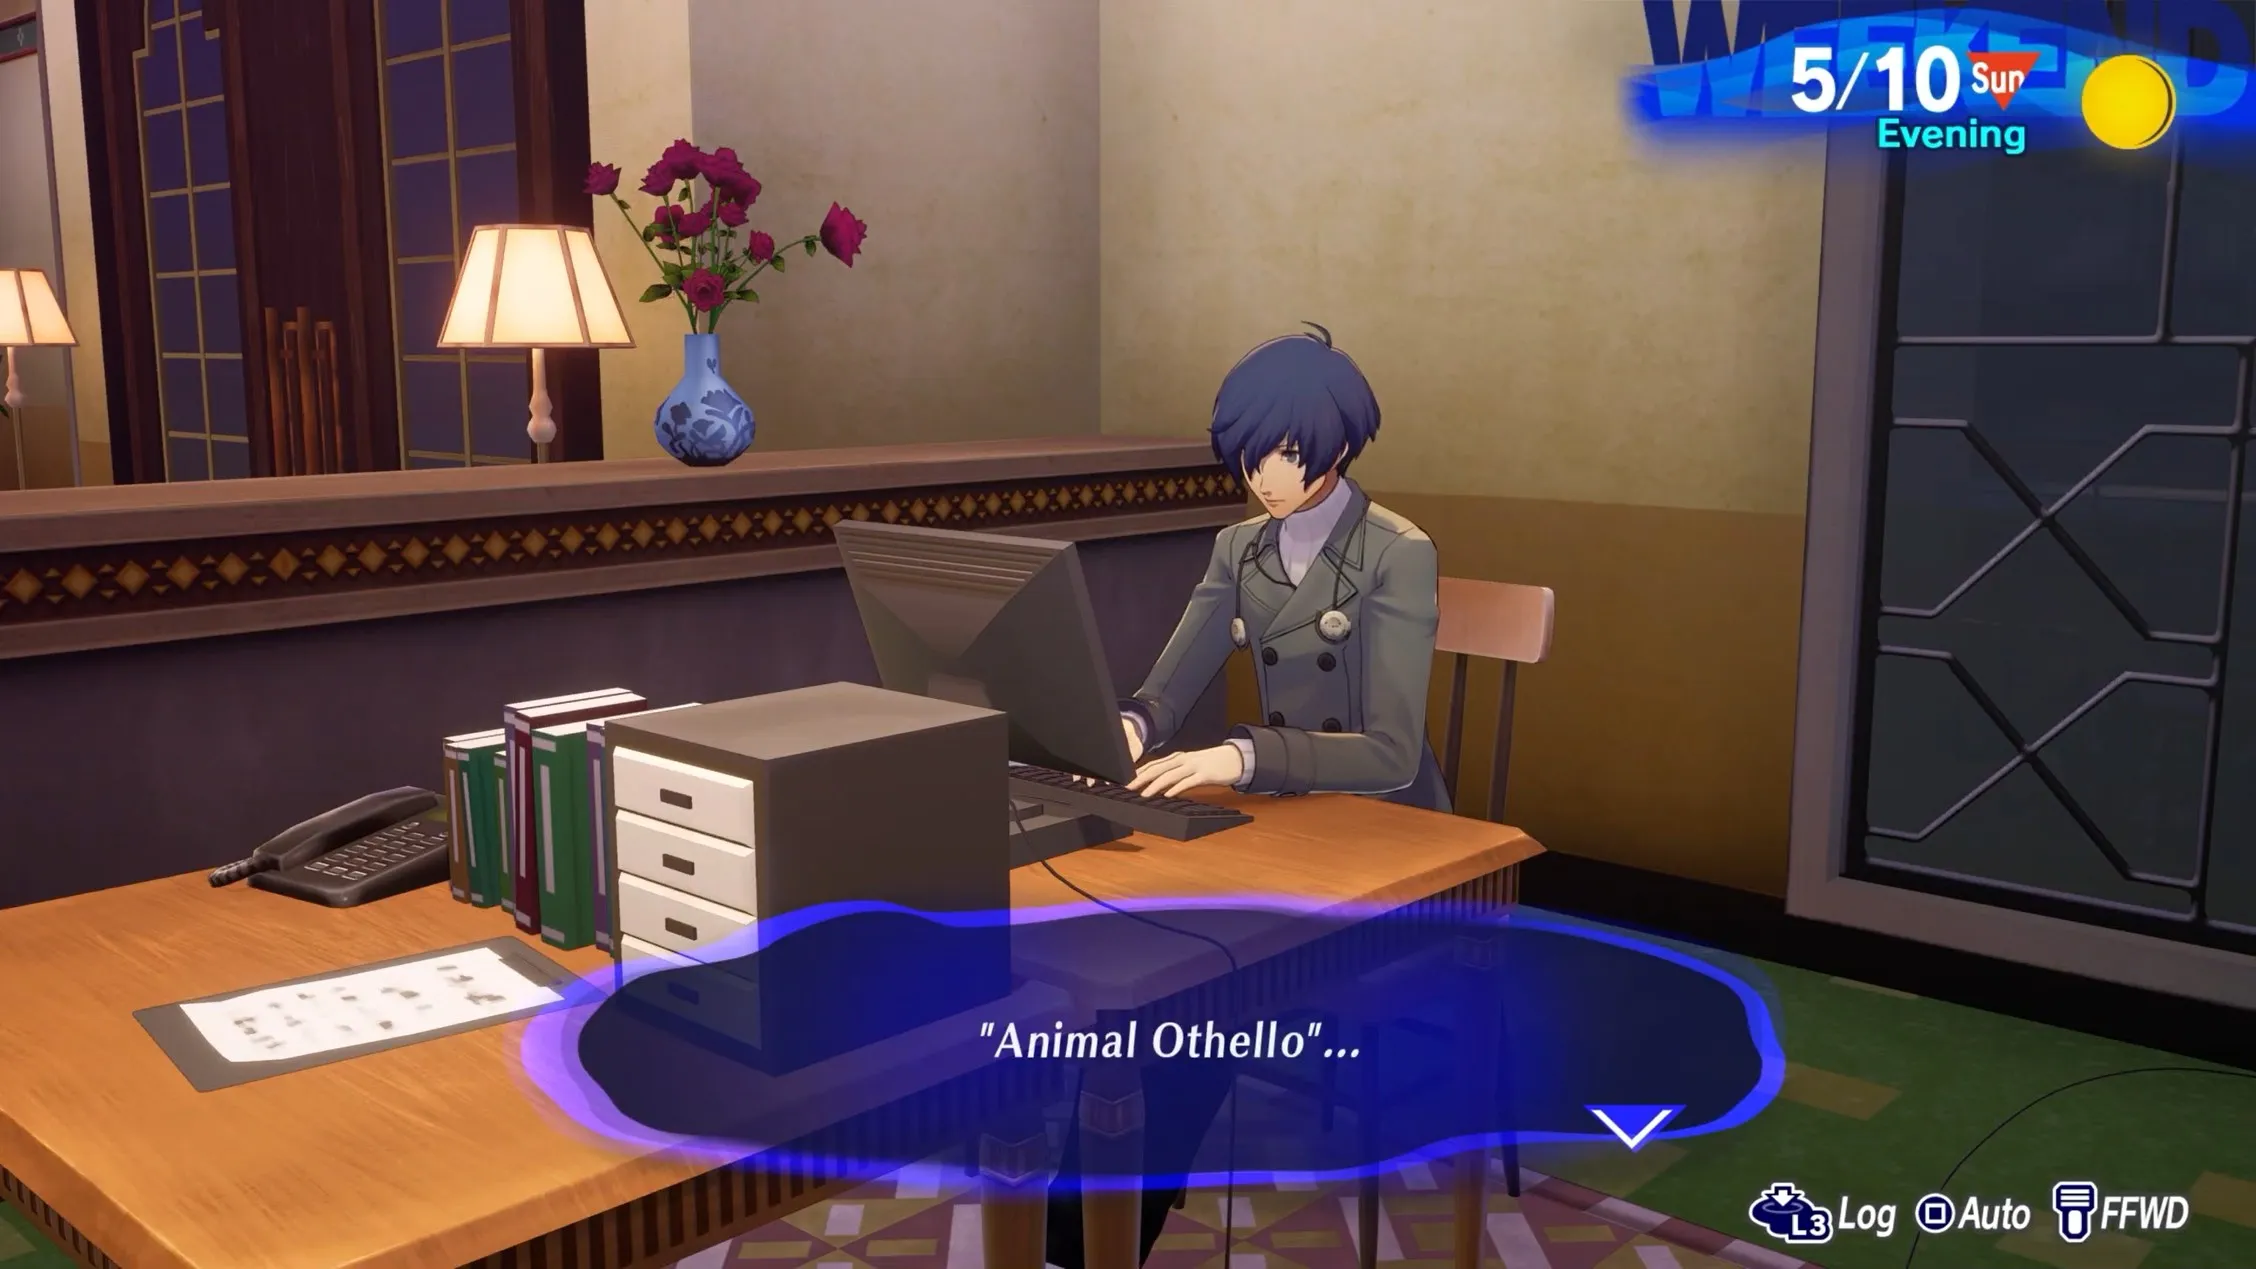 Макото, играющий в Animal Otherllo на компьютере в гостиной общежития Persona 3 Reload, социальные характеристики p3r